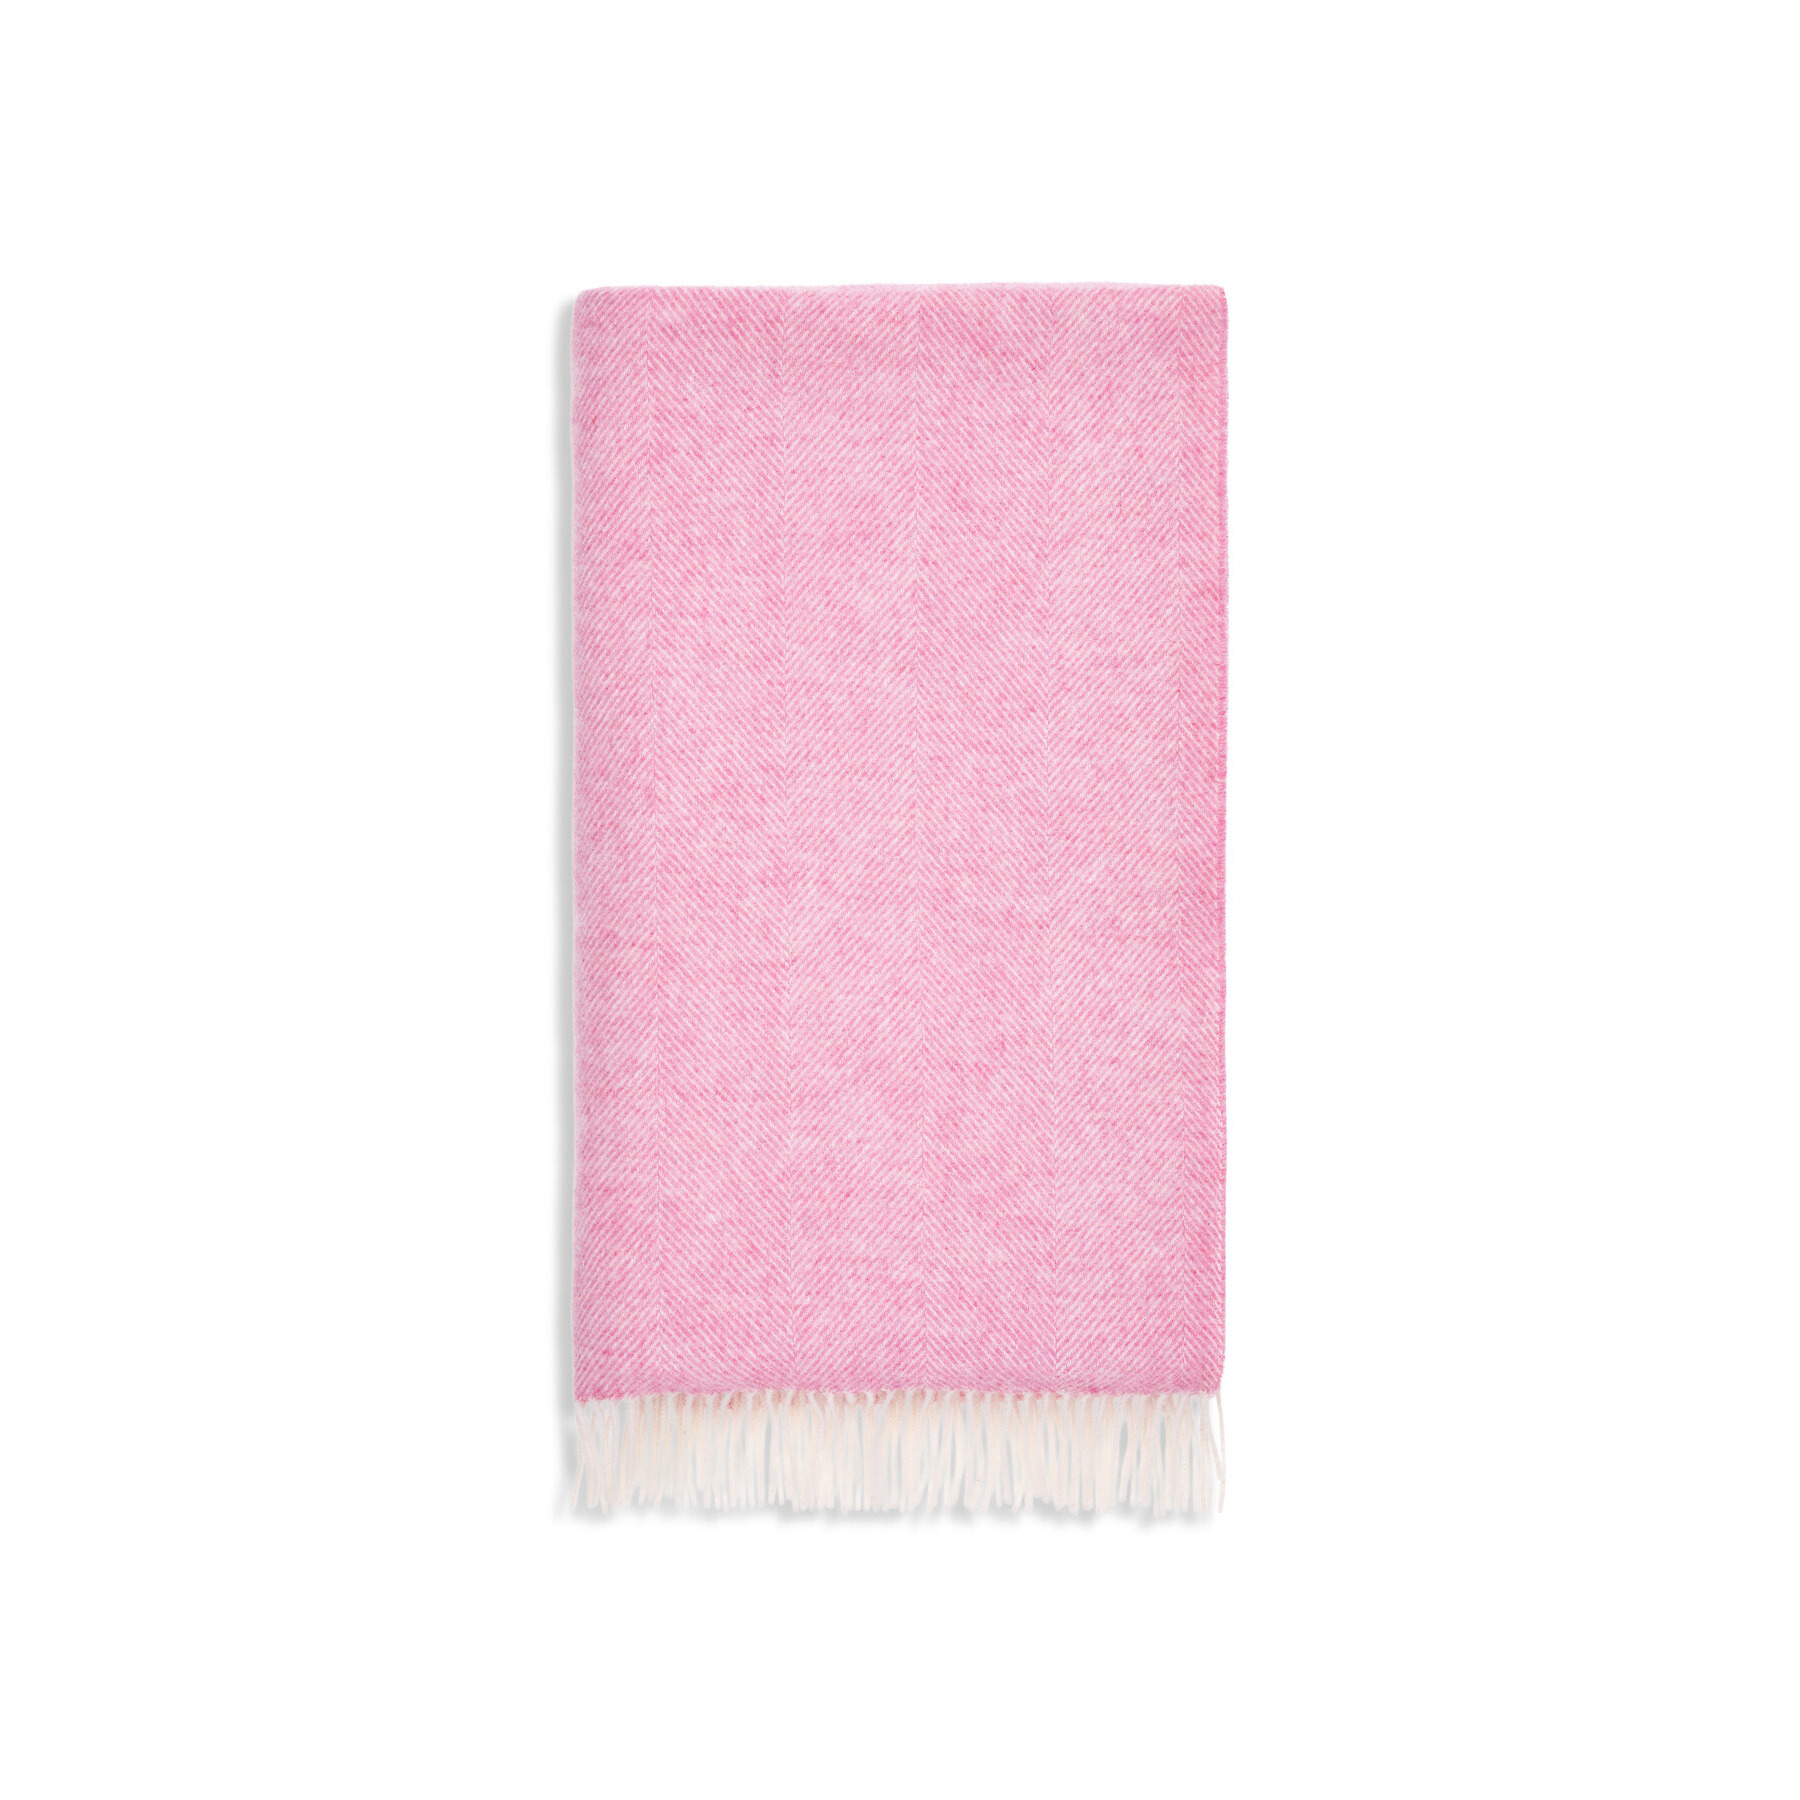 Bronte Herringbone Lambswool Blanket Pink - image 1